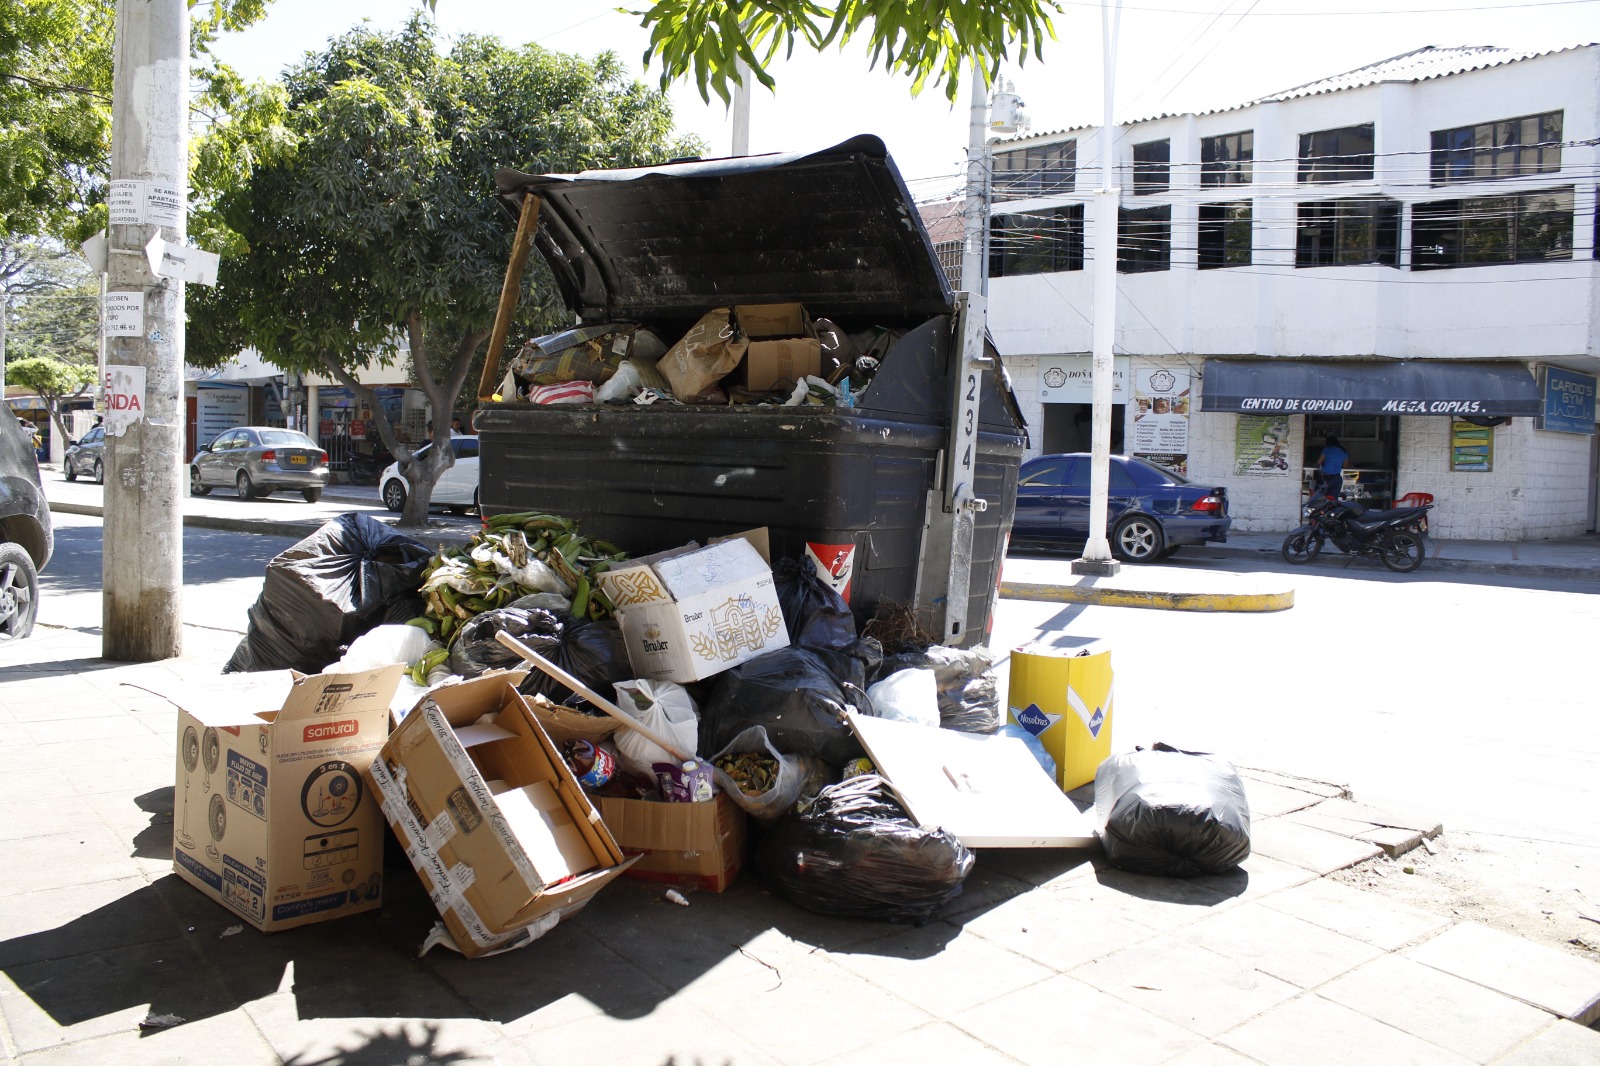 ATESA, “Mantener limpia la ciudad no es un favor, es una obligación”: La Alcaldesa